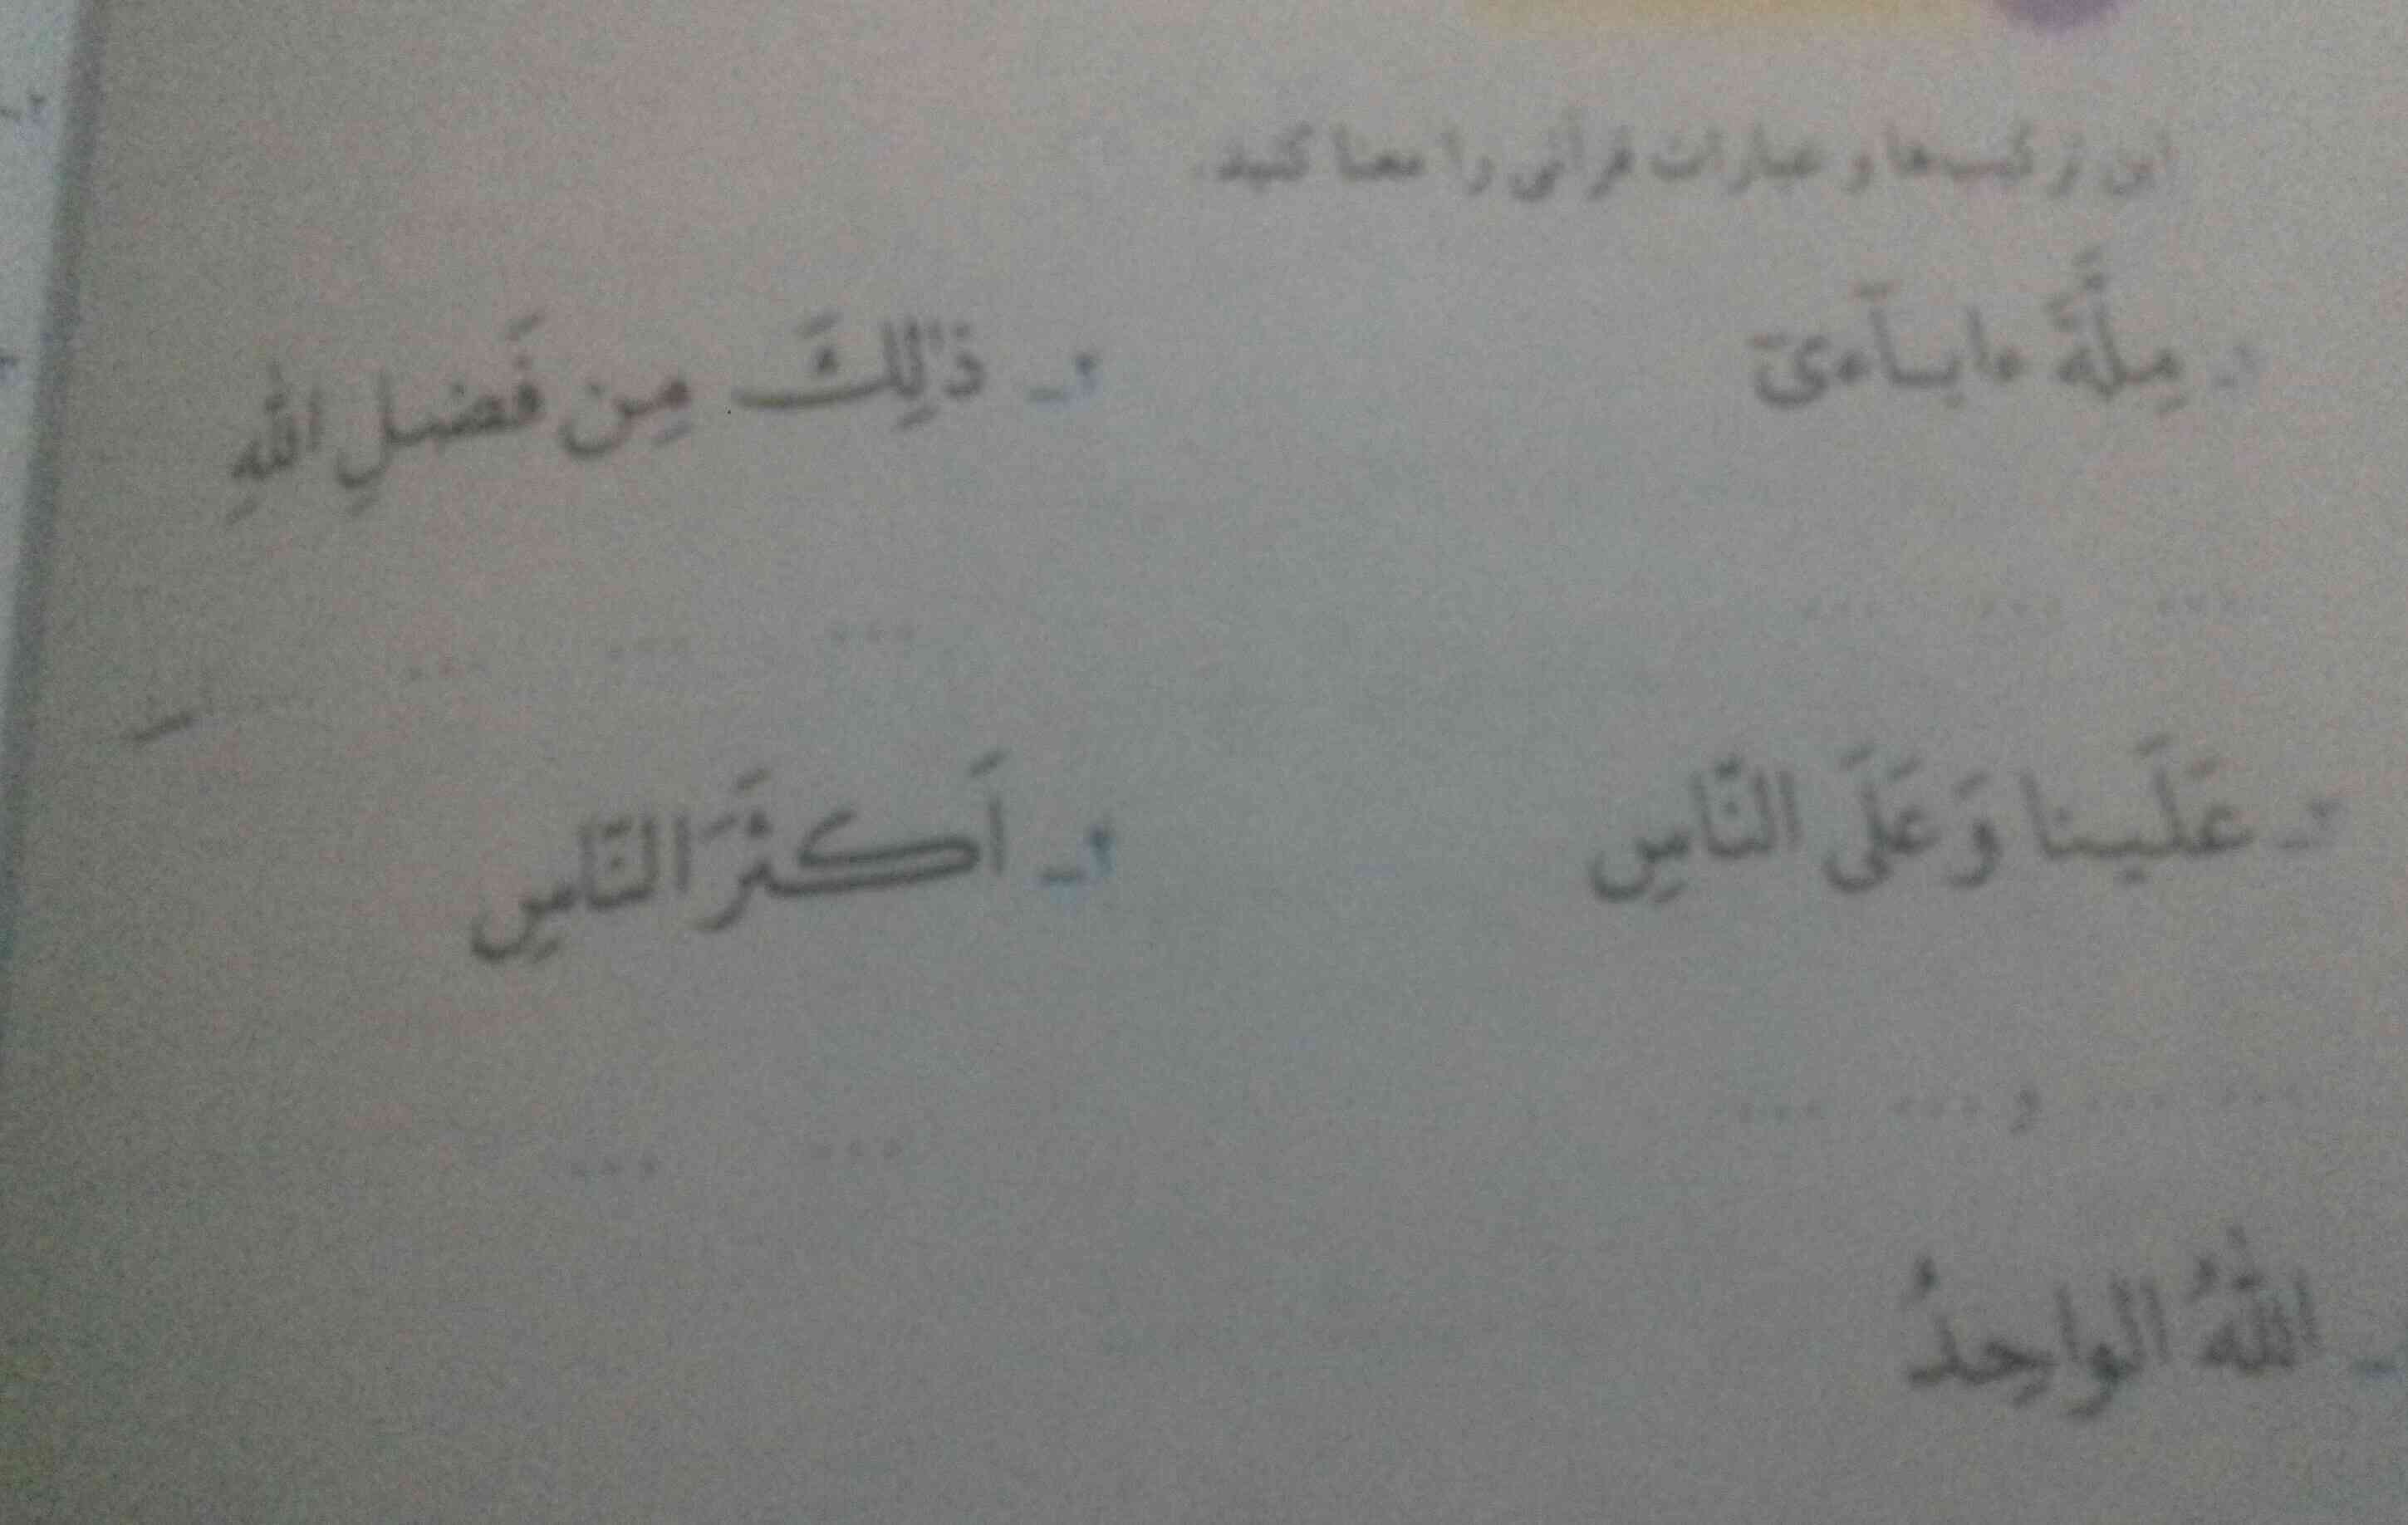 قرآن صفحه 36 بچه لطفا بگید😍😘